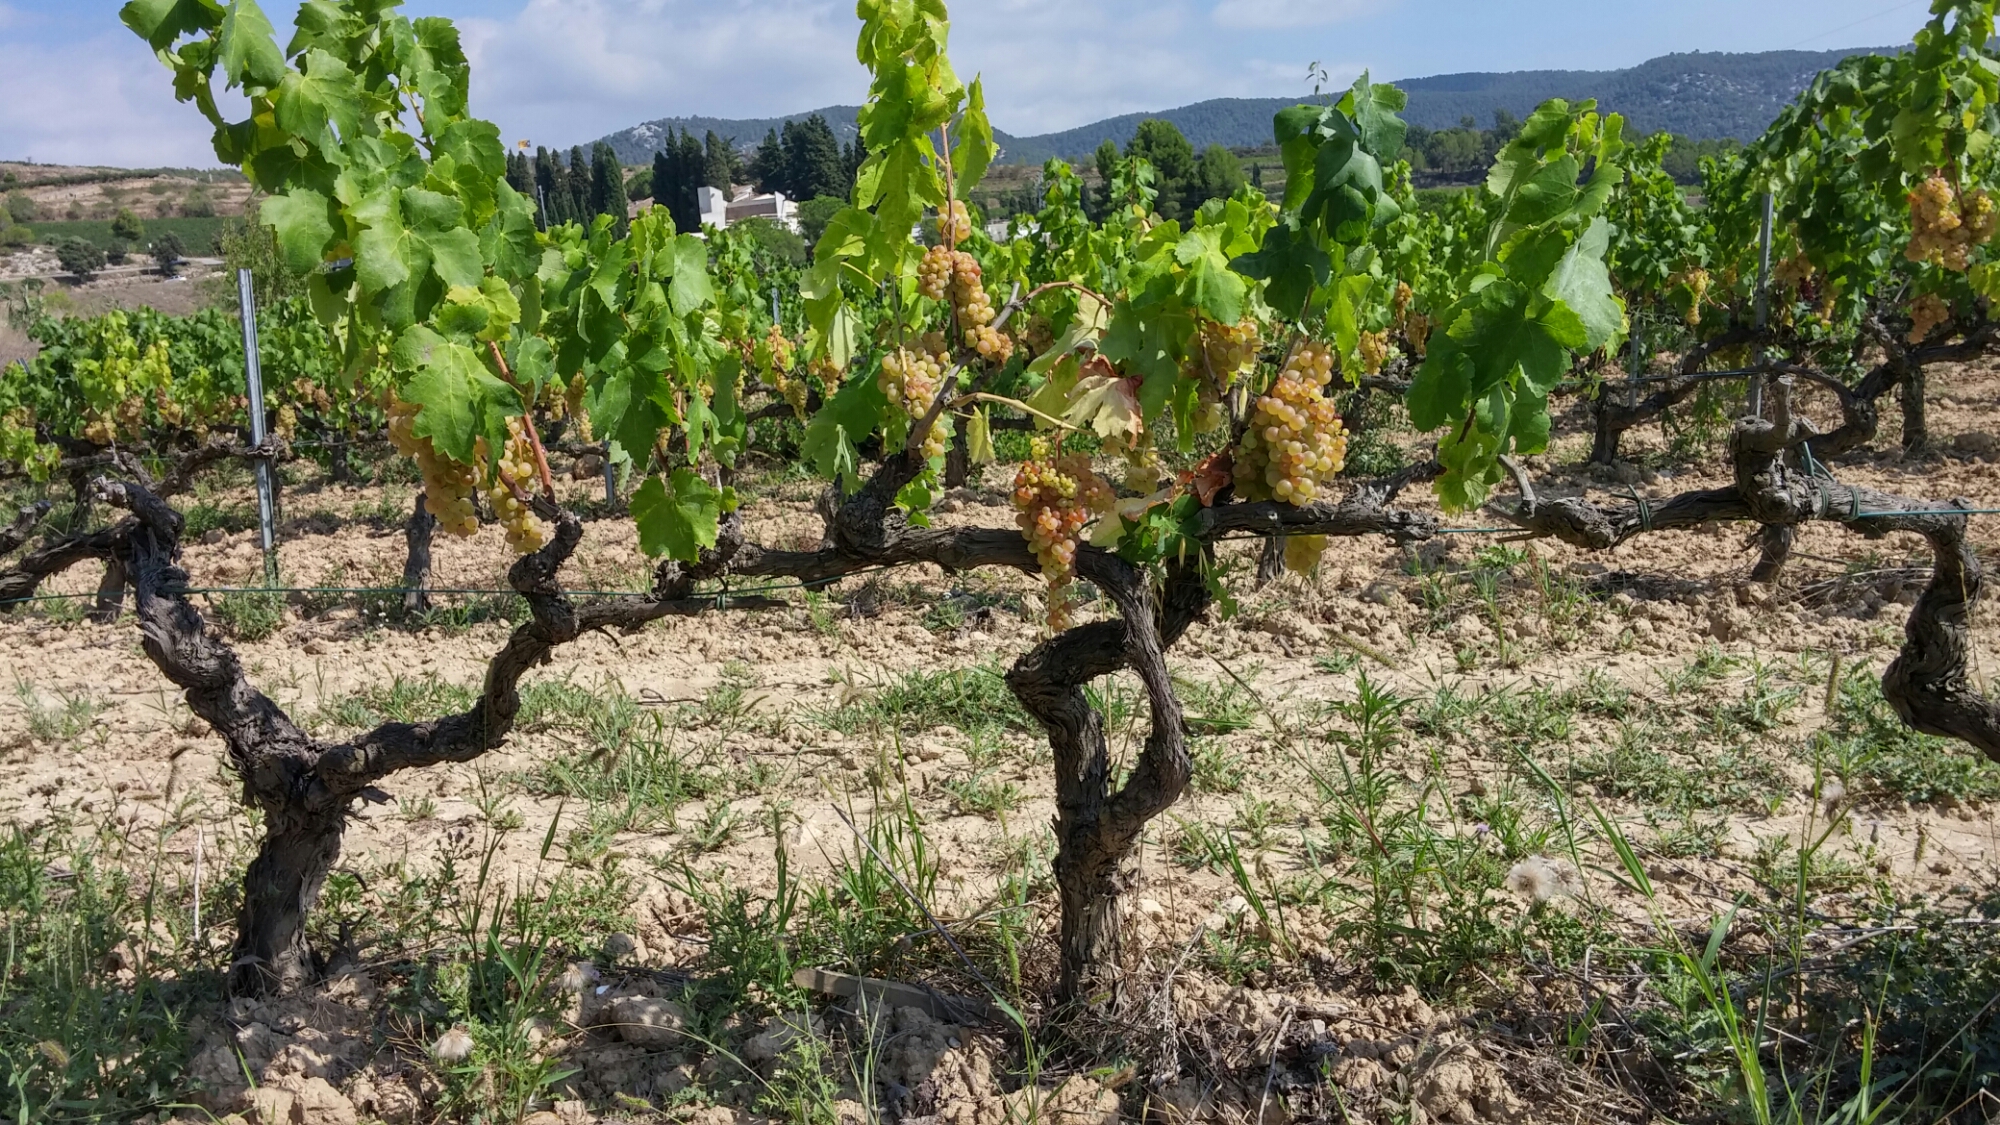 Xarel-Lo vines look similar to chardonnay